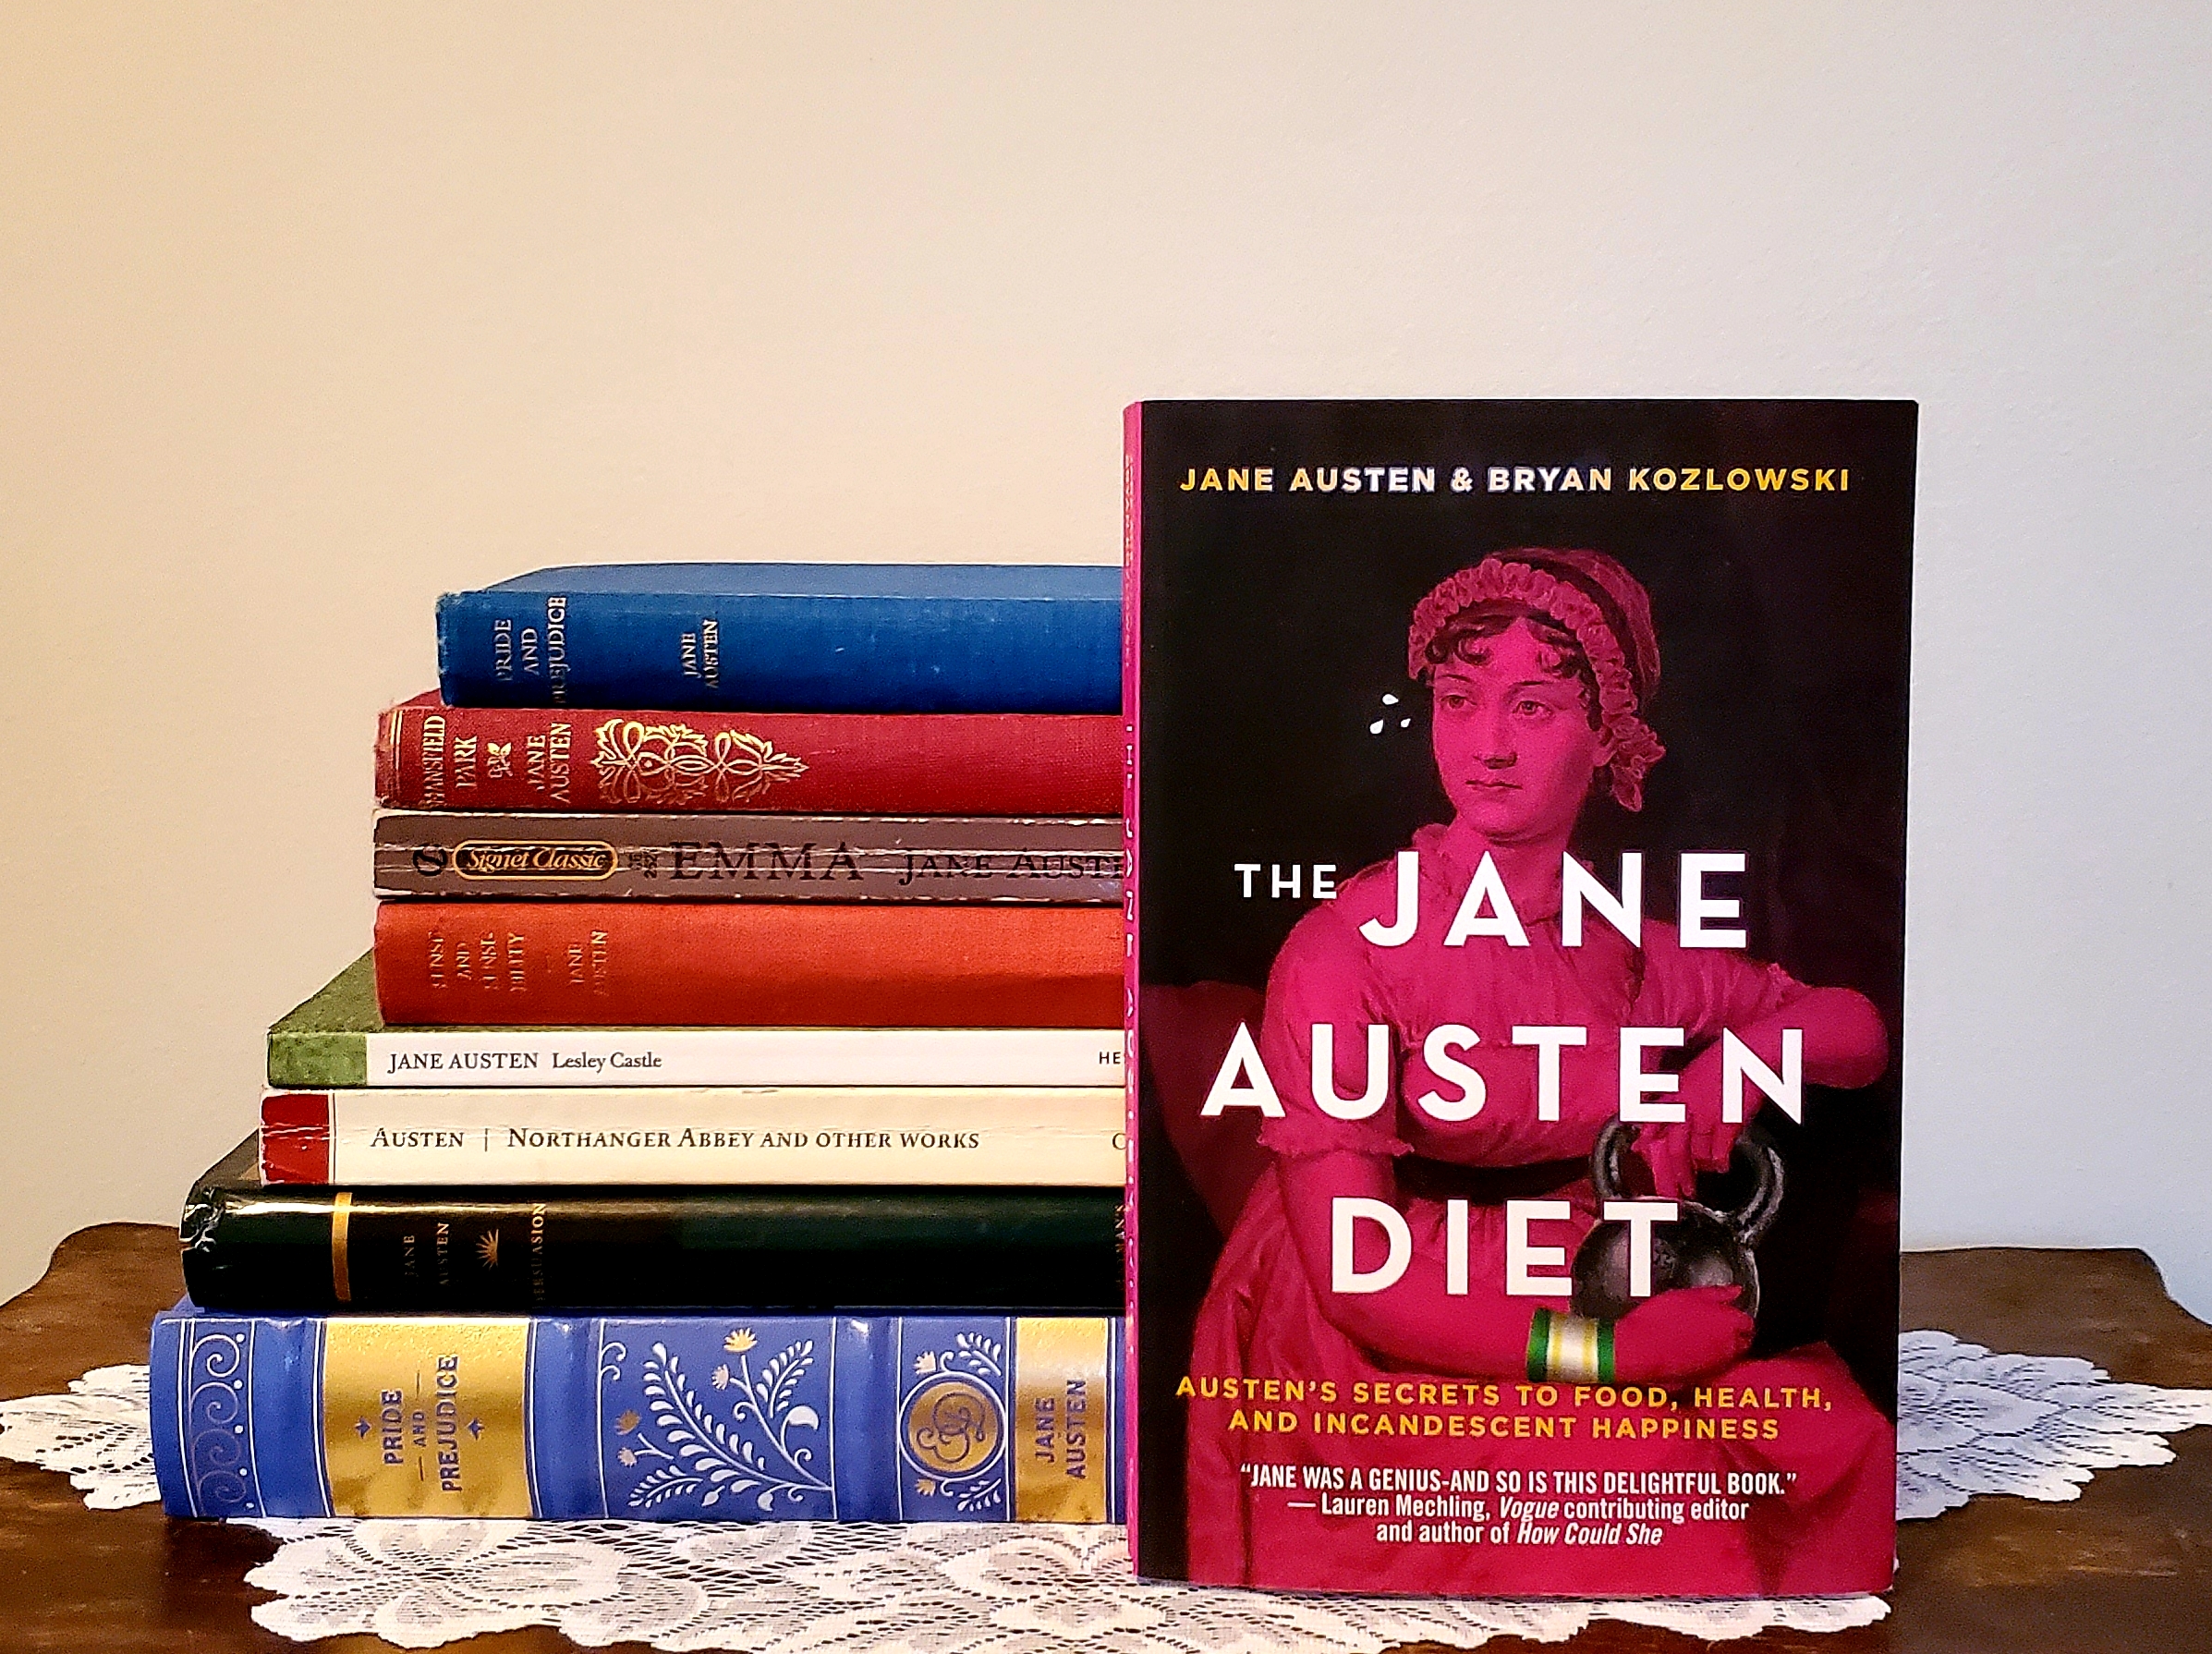 The Jane Austen Diet book